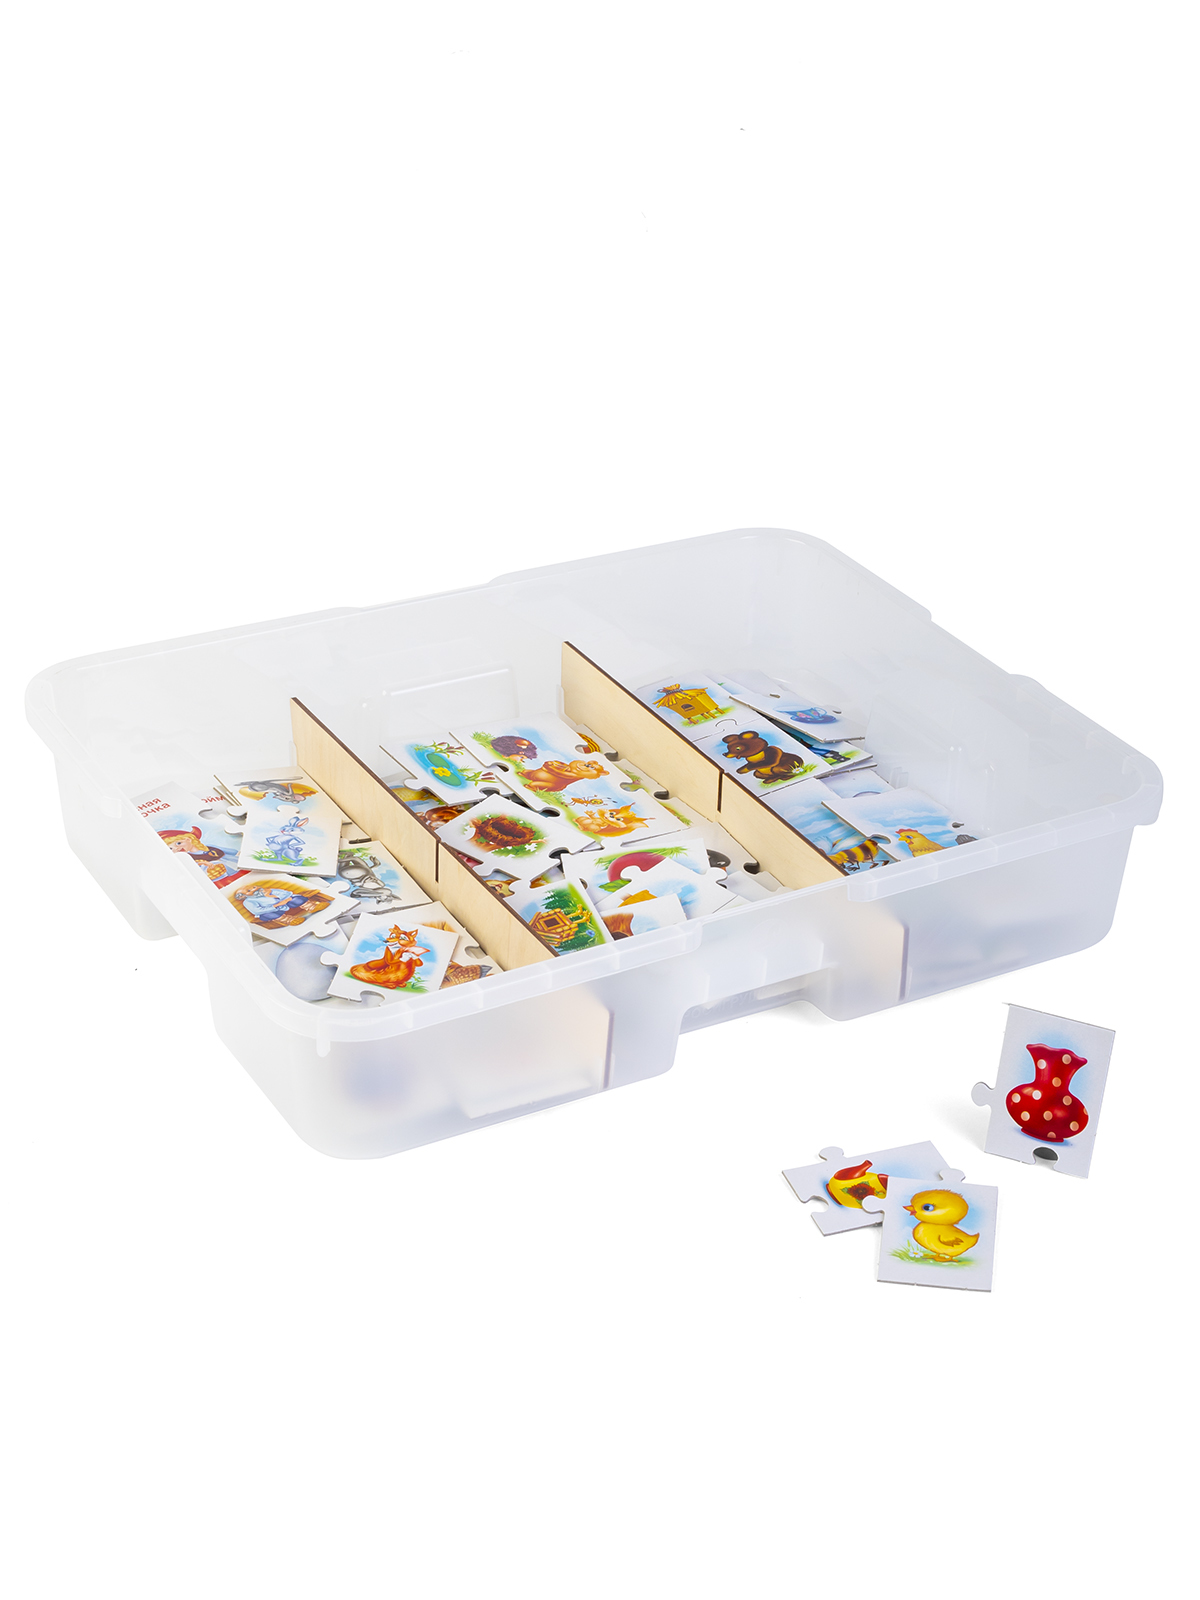 Комплект логических игр Малыш / 3 комплекта в системе хранения Игротека